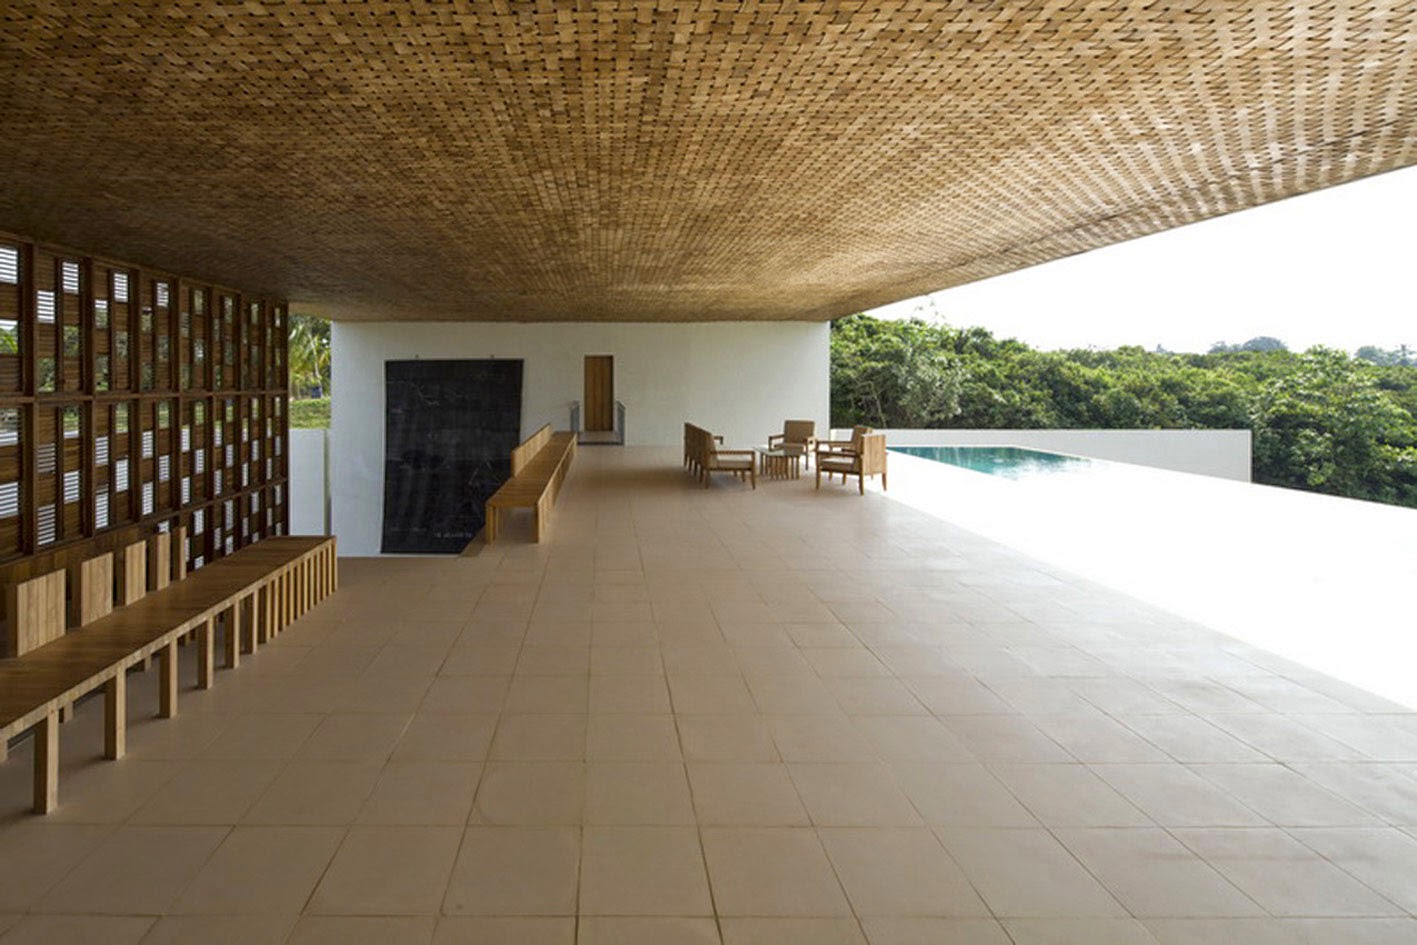 simplicity love: Villa Vista, Sri Lanka | Shigeru Ban Architects